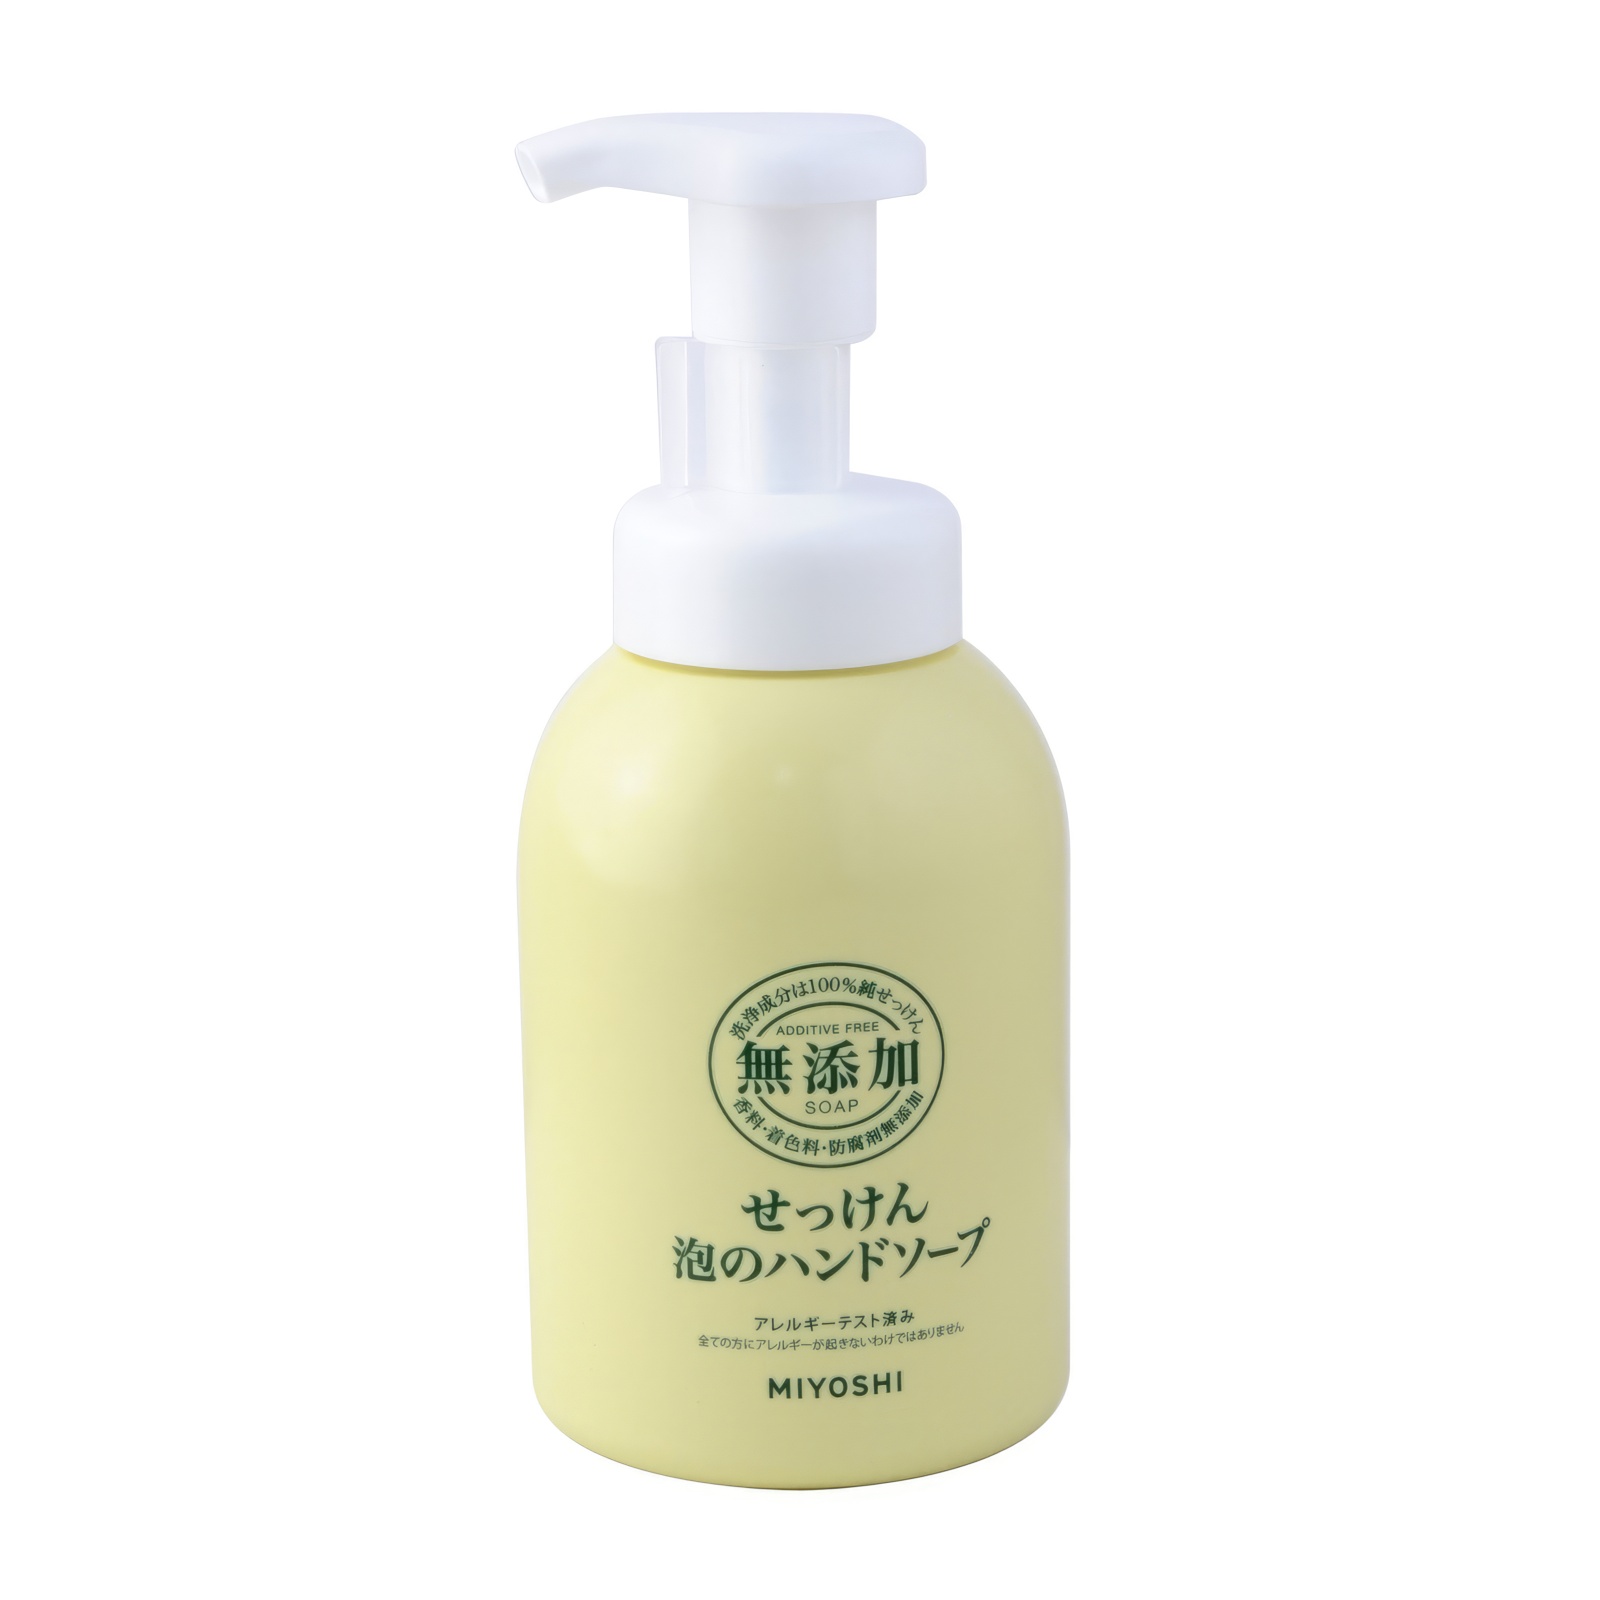 Жидкое мыло MIYOSHI Натуральное пенящееся эко для рук 350 мл мыльная основа brilliant sls free white вес 10 кг